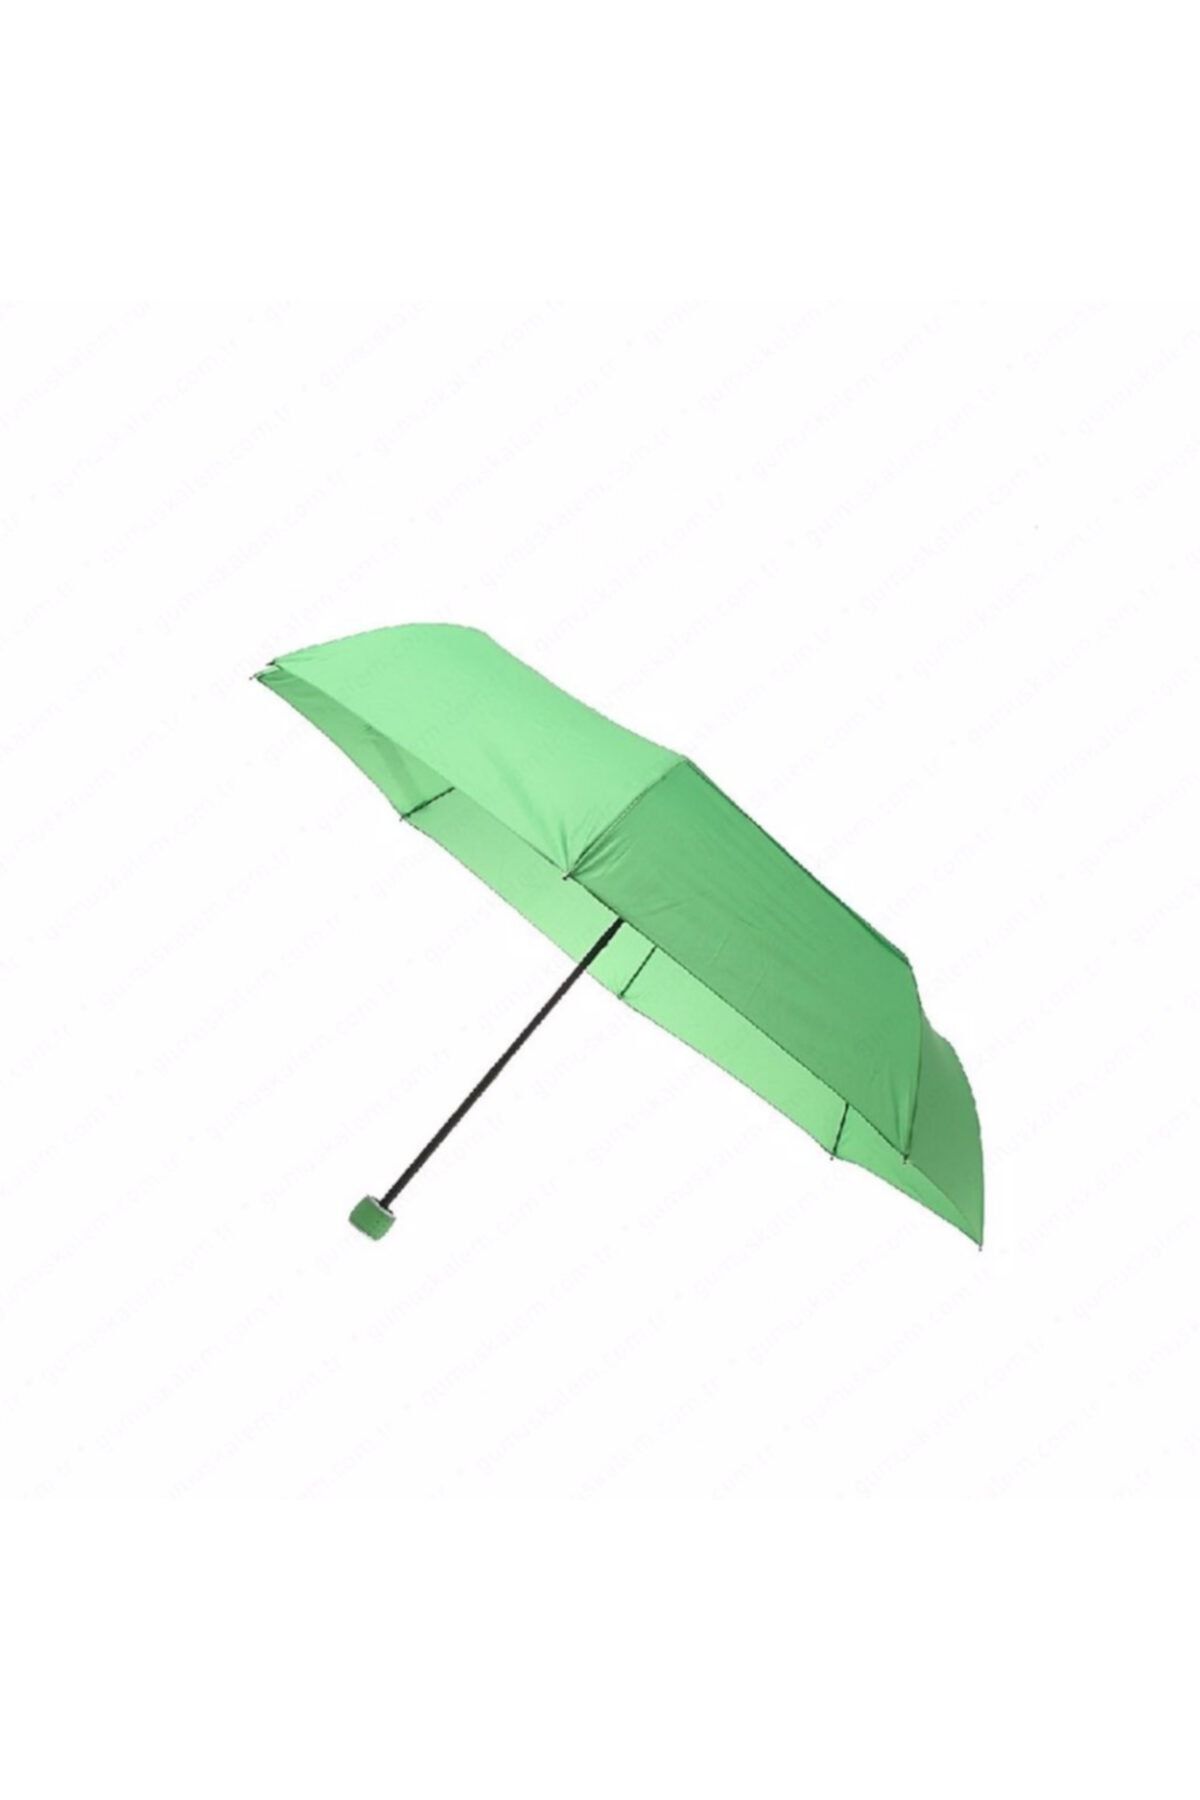 MİHRAP Pierre Cardin Unisex Şemsiye Kauçuk Saplı Yeşil Otomatik Pc218g